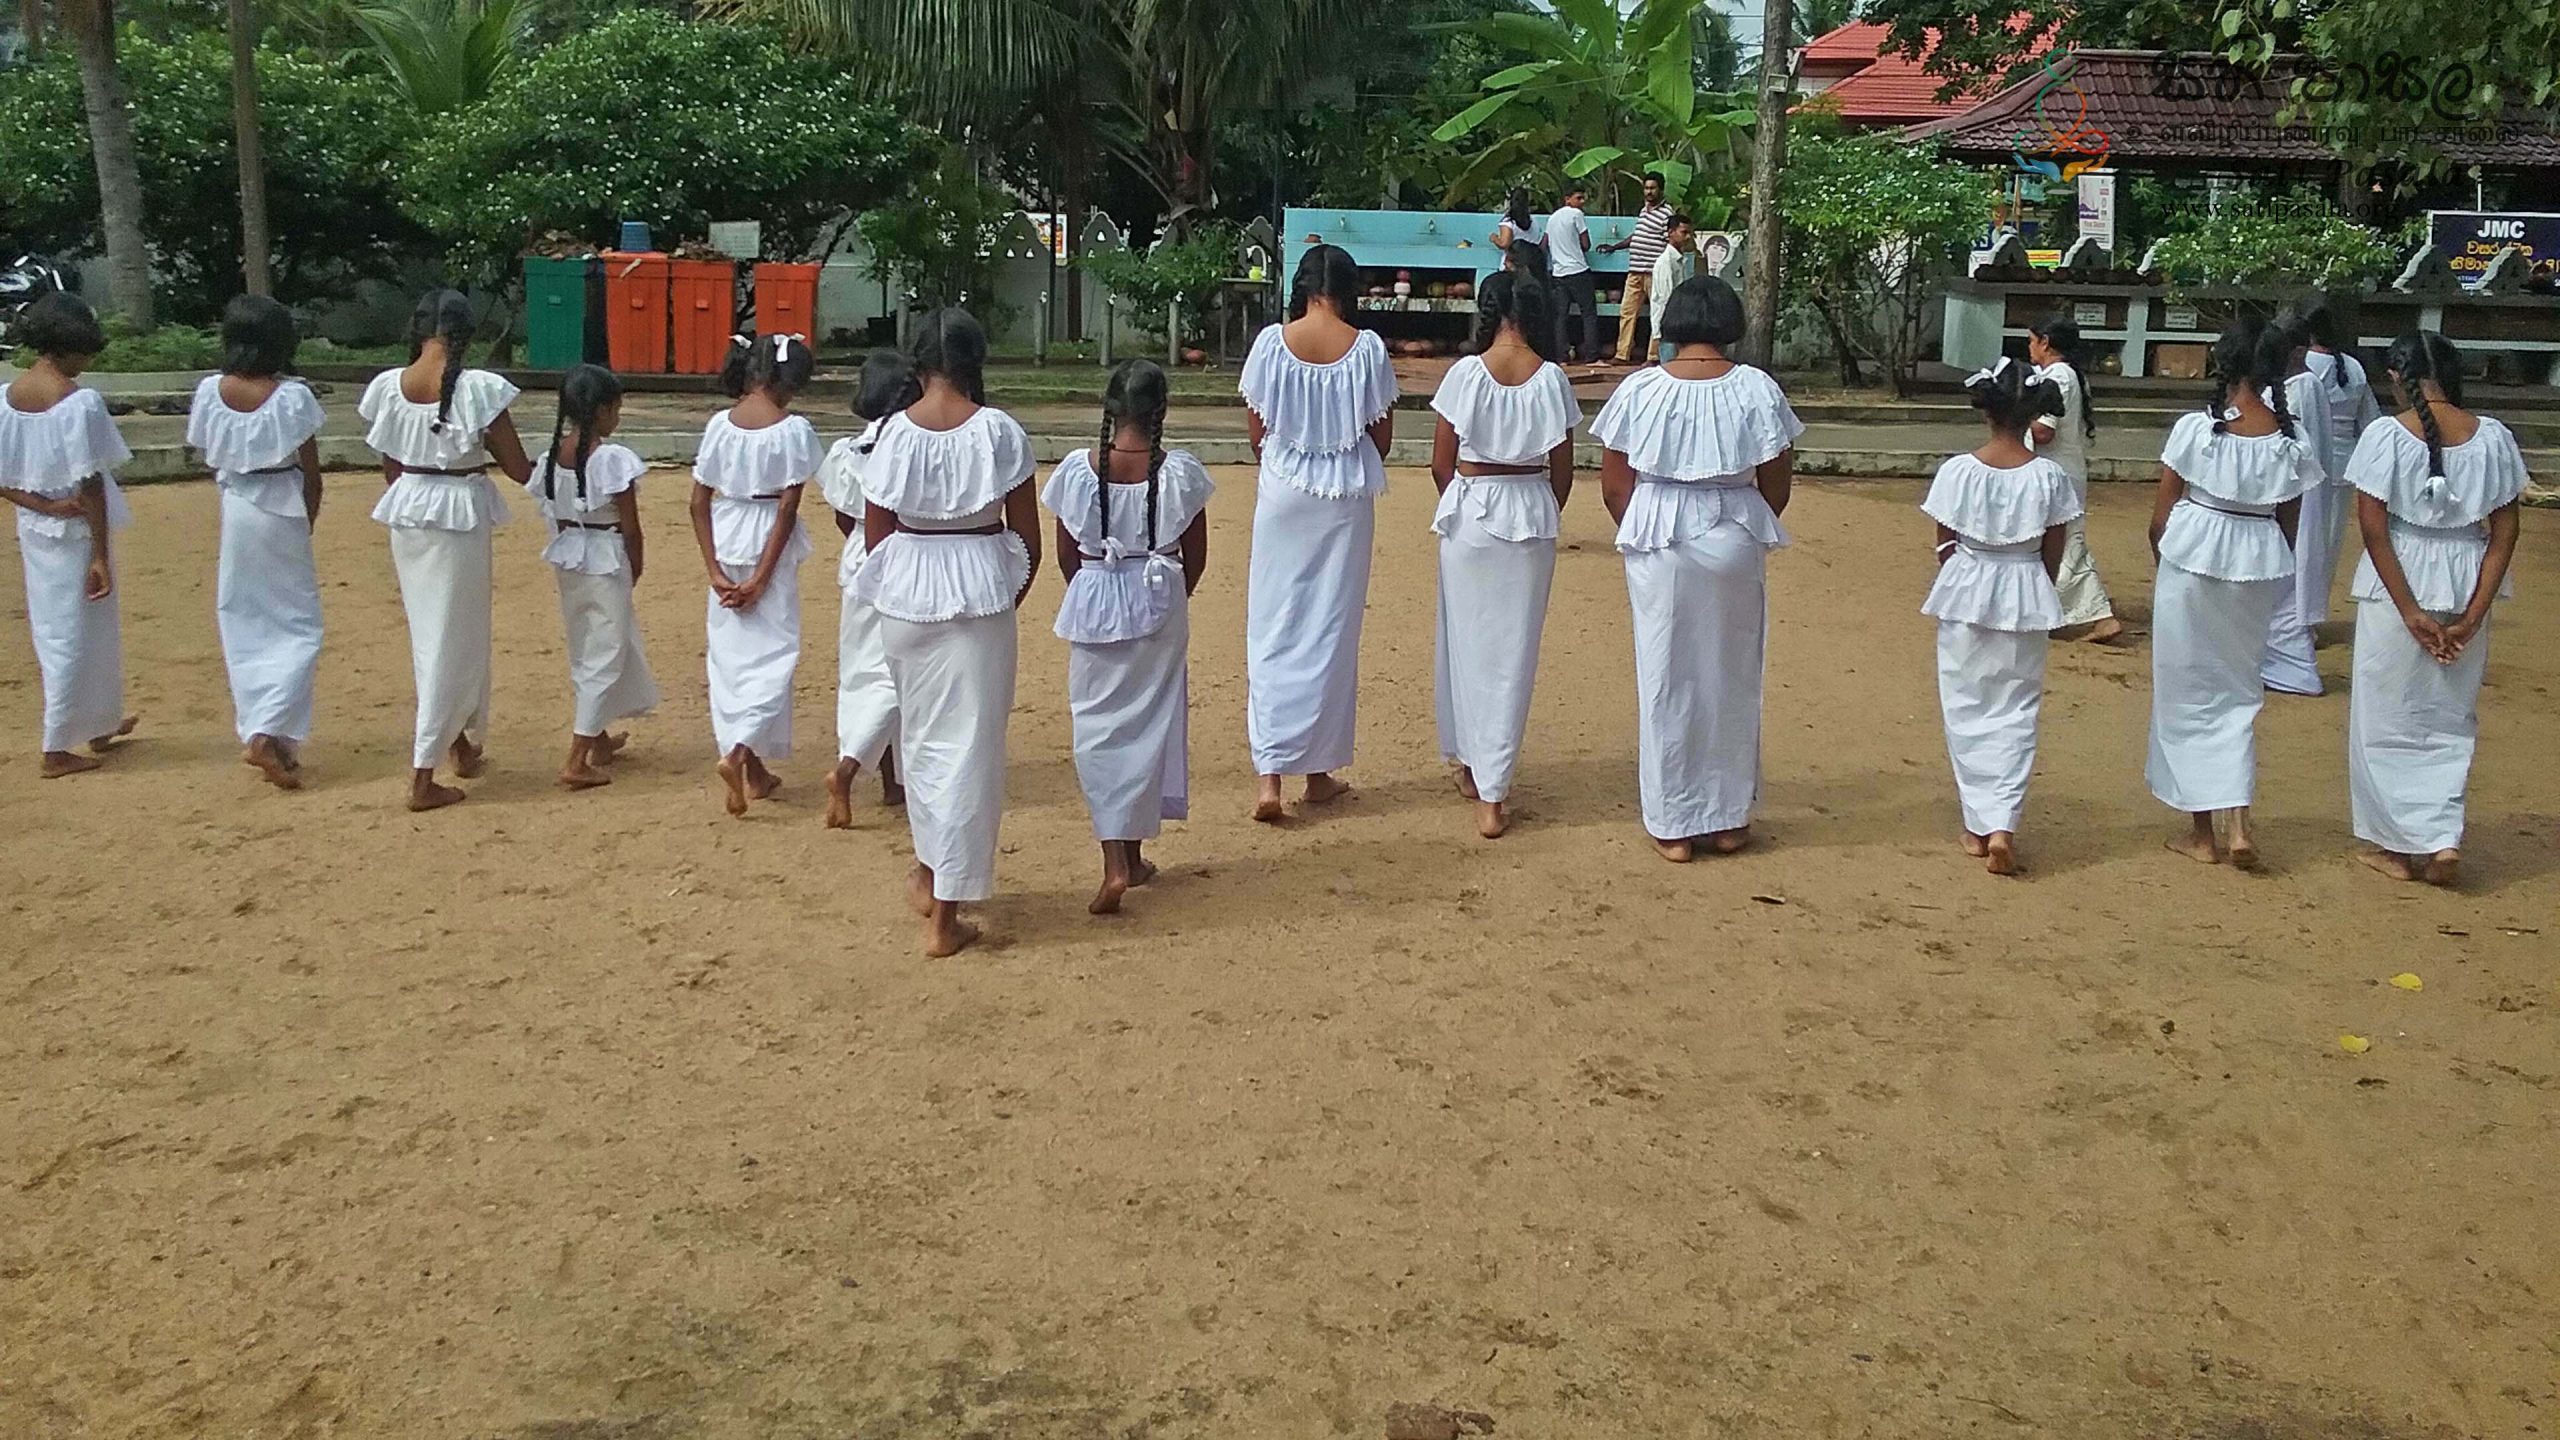 Sati Pasala Mindfulness Program at Ethkandha Rajamaha Viharaya, Kurunegala